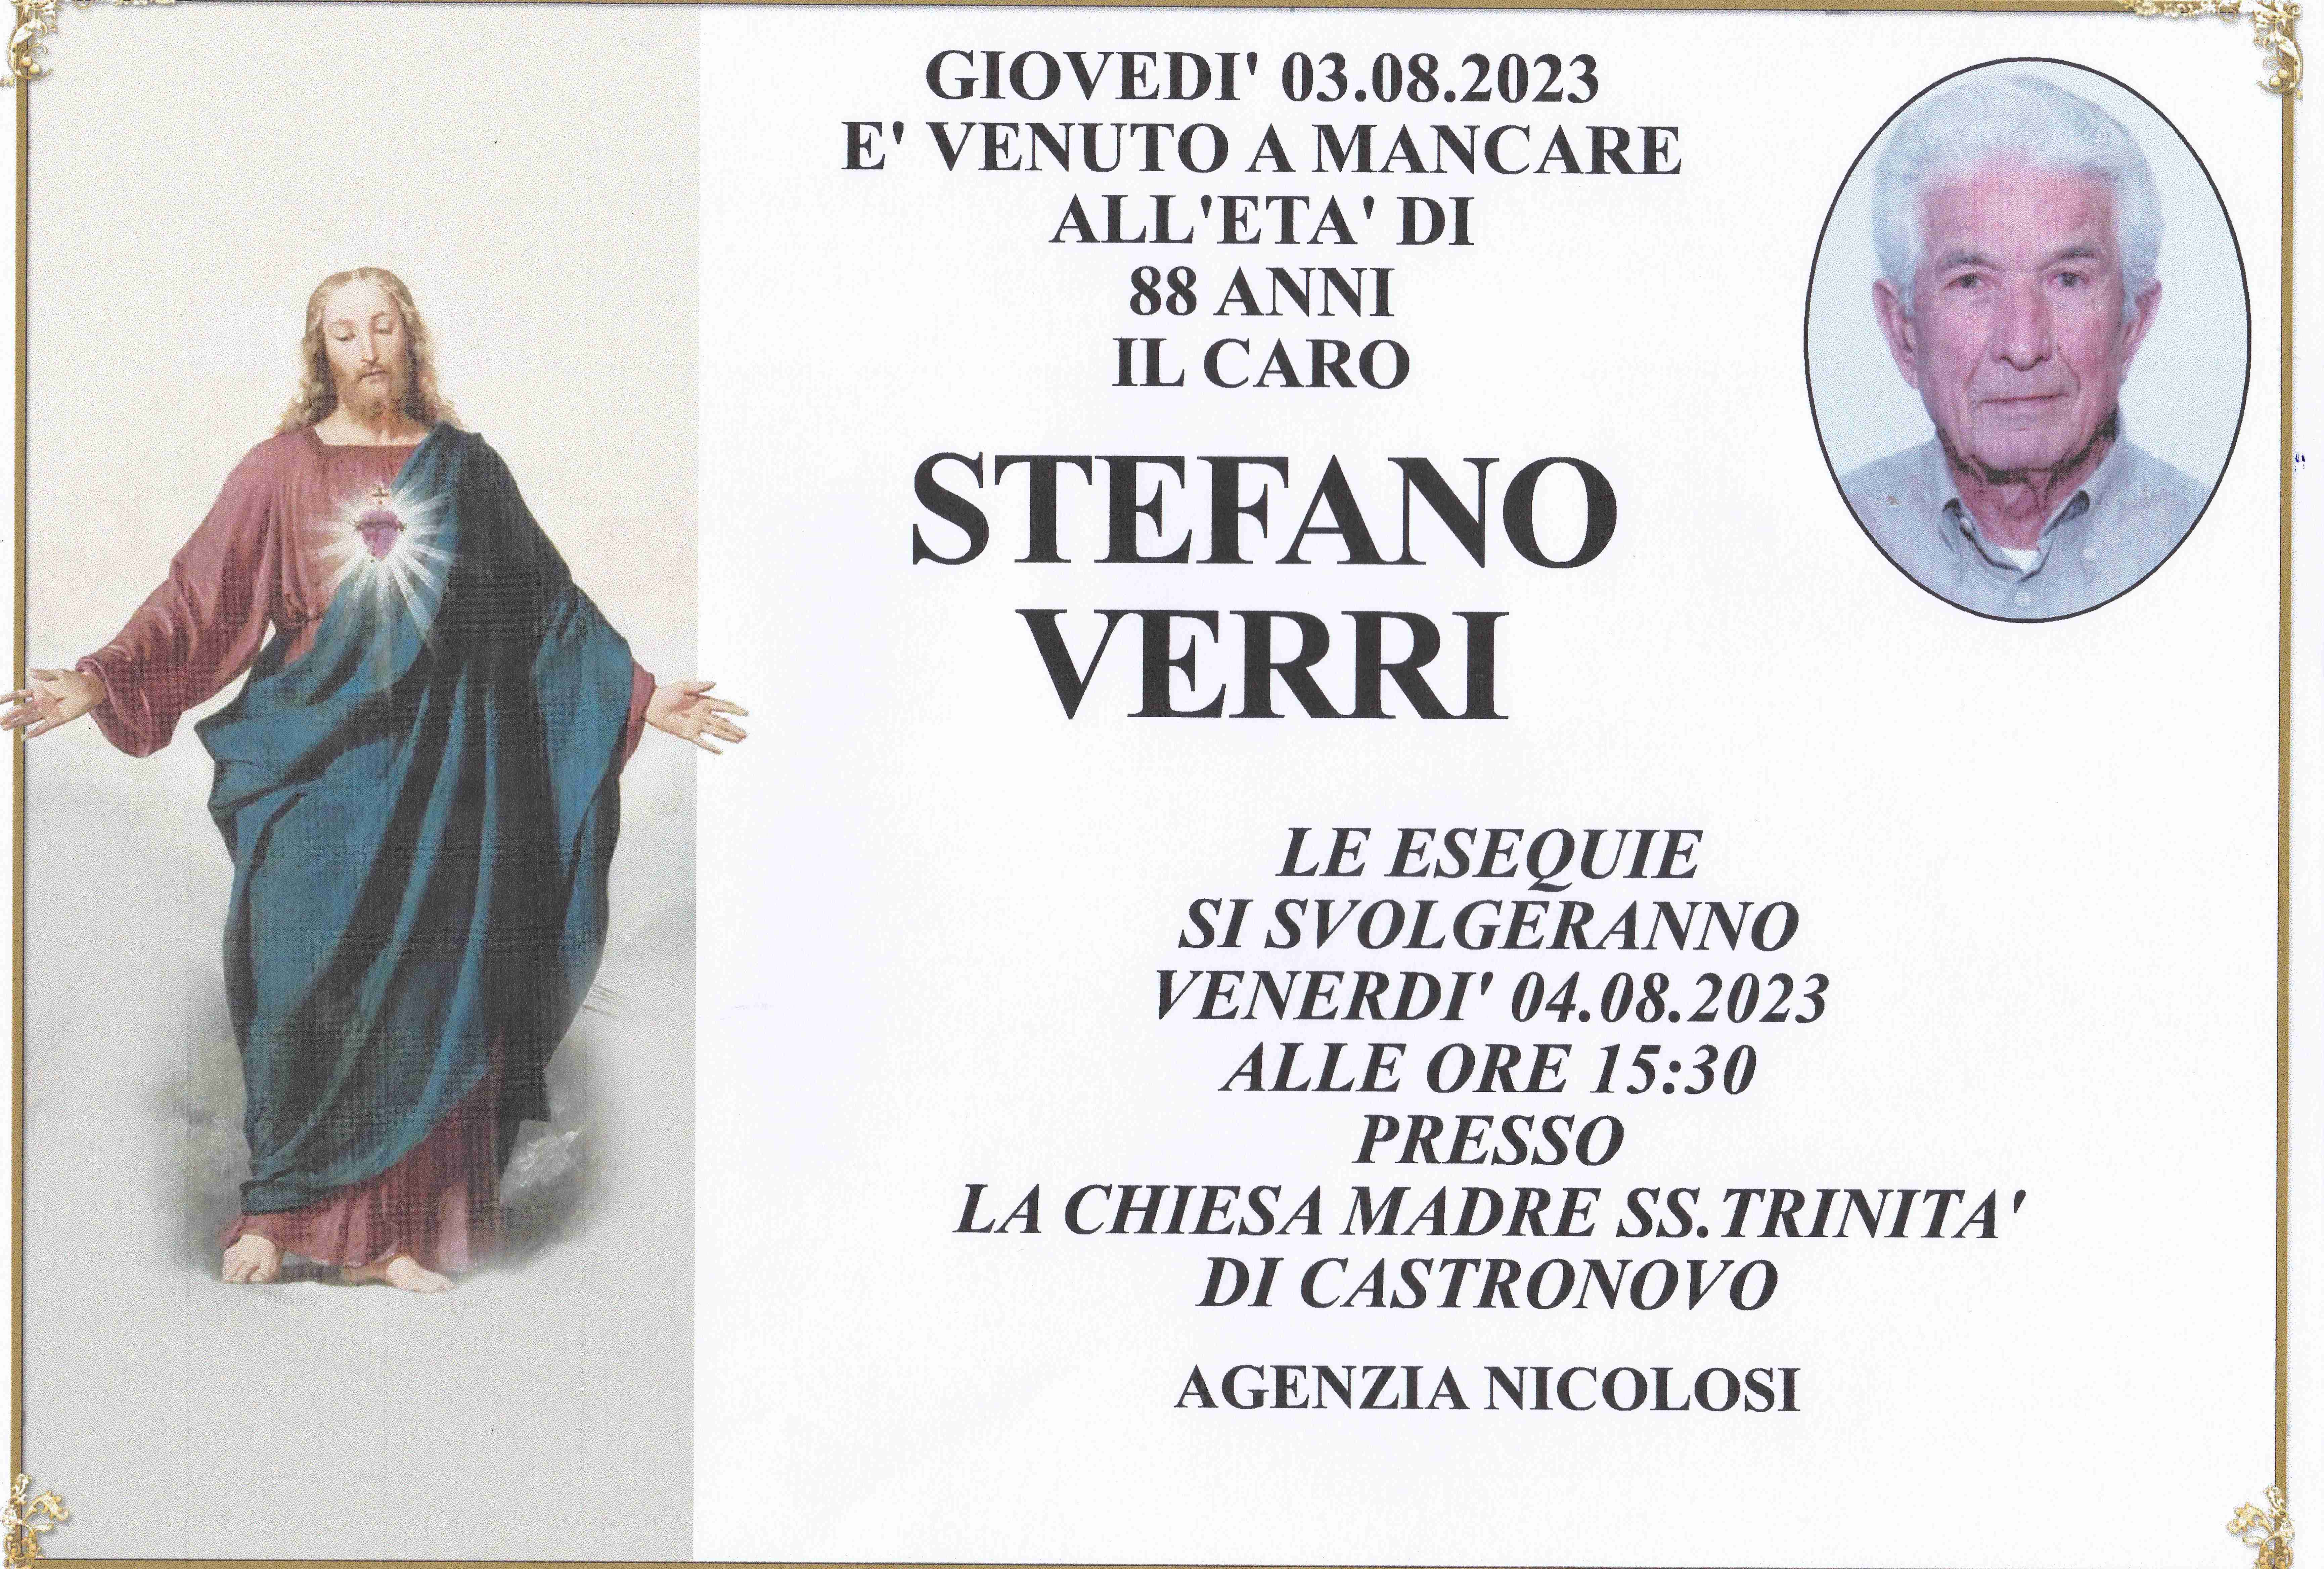 Stefano Verri